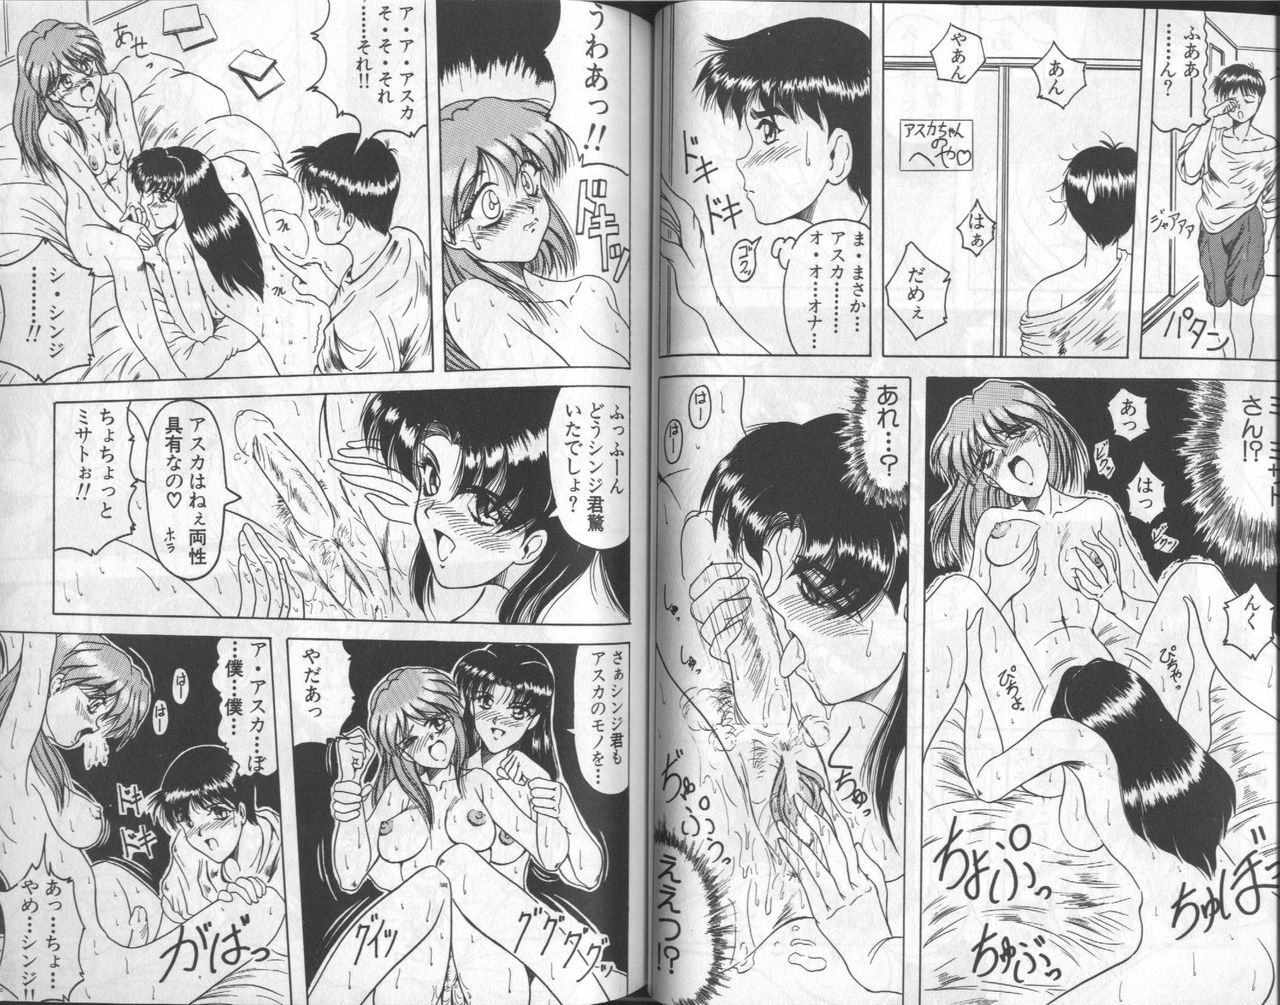 [Anthology] Shitsurakuen 6 | Paradise Lost 6 (Neon Genesis Evangelion) page 51 full